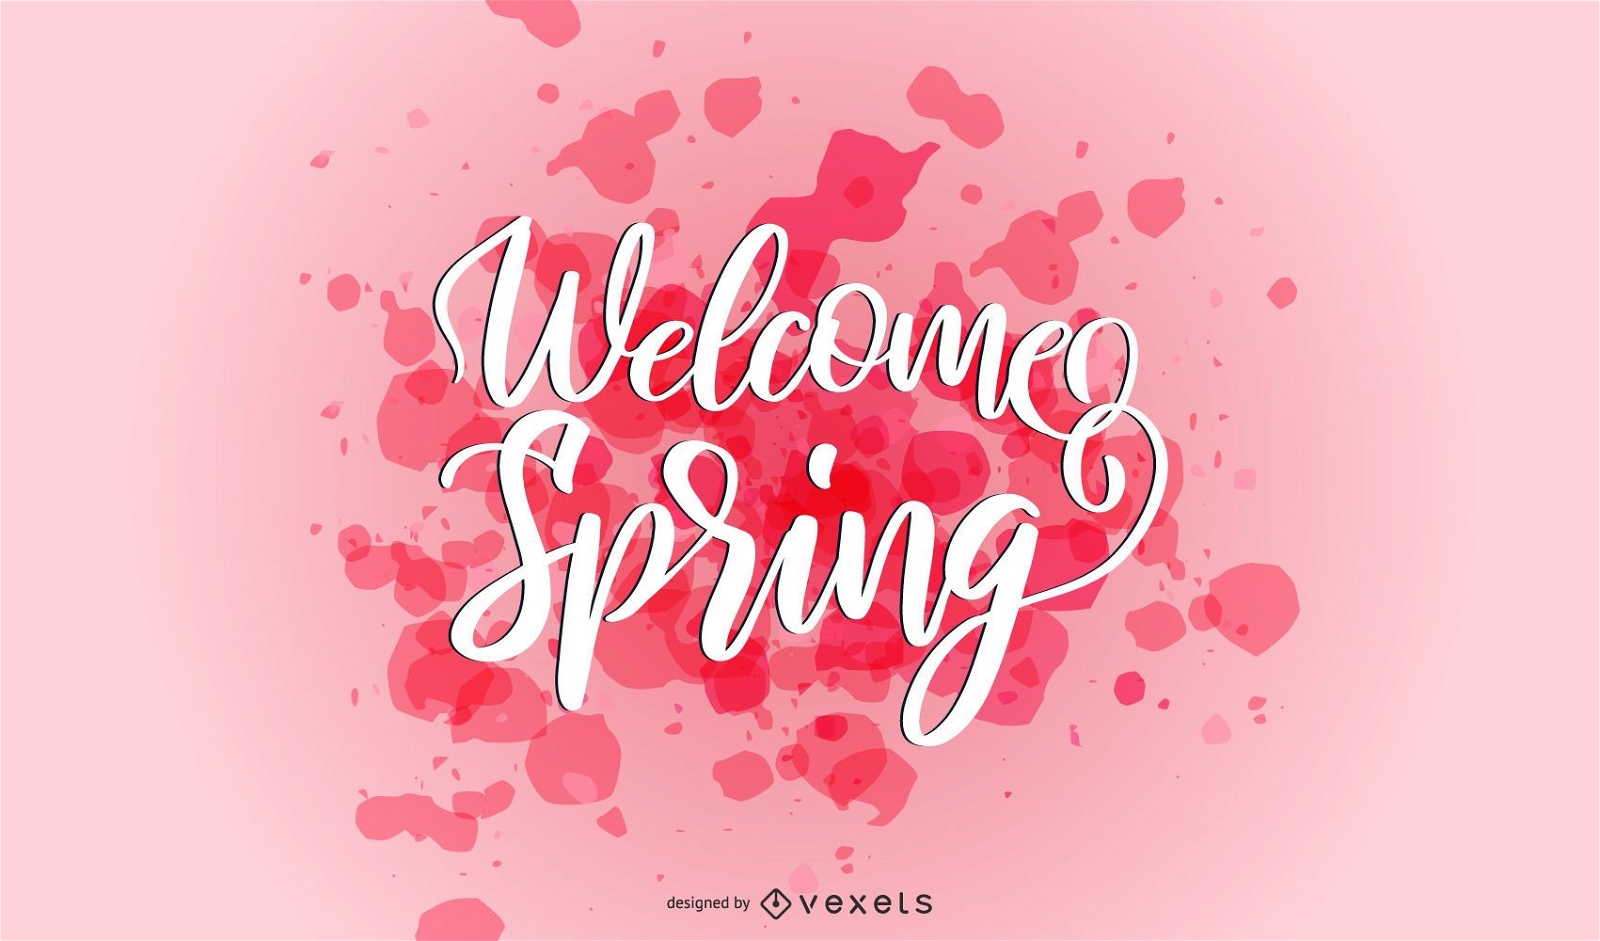 Welcome spring splash lettering